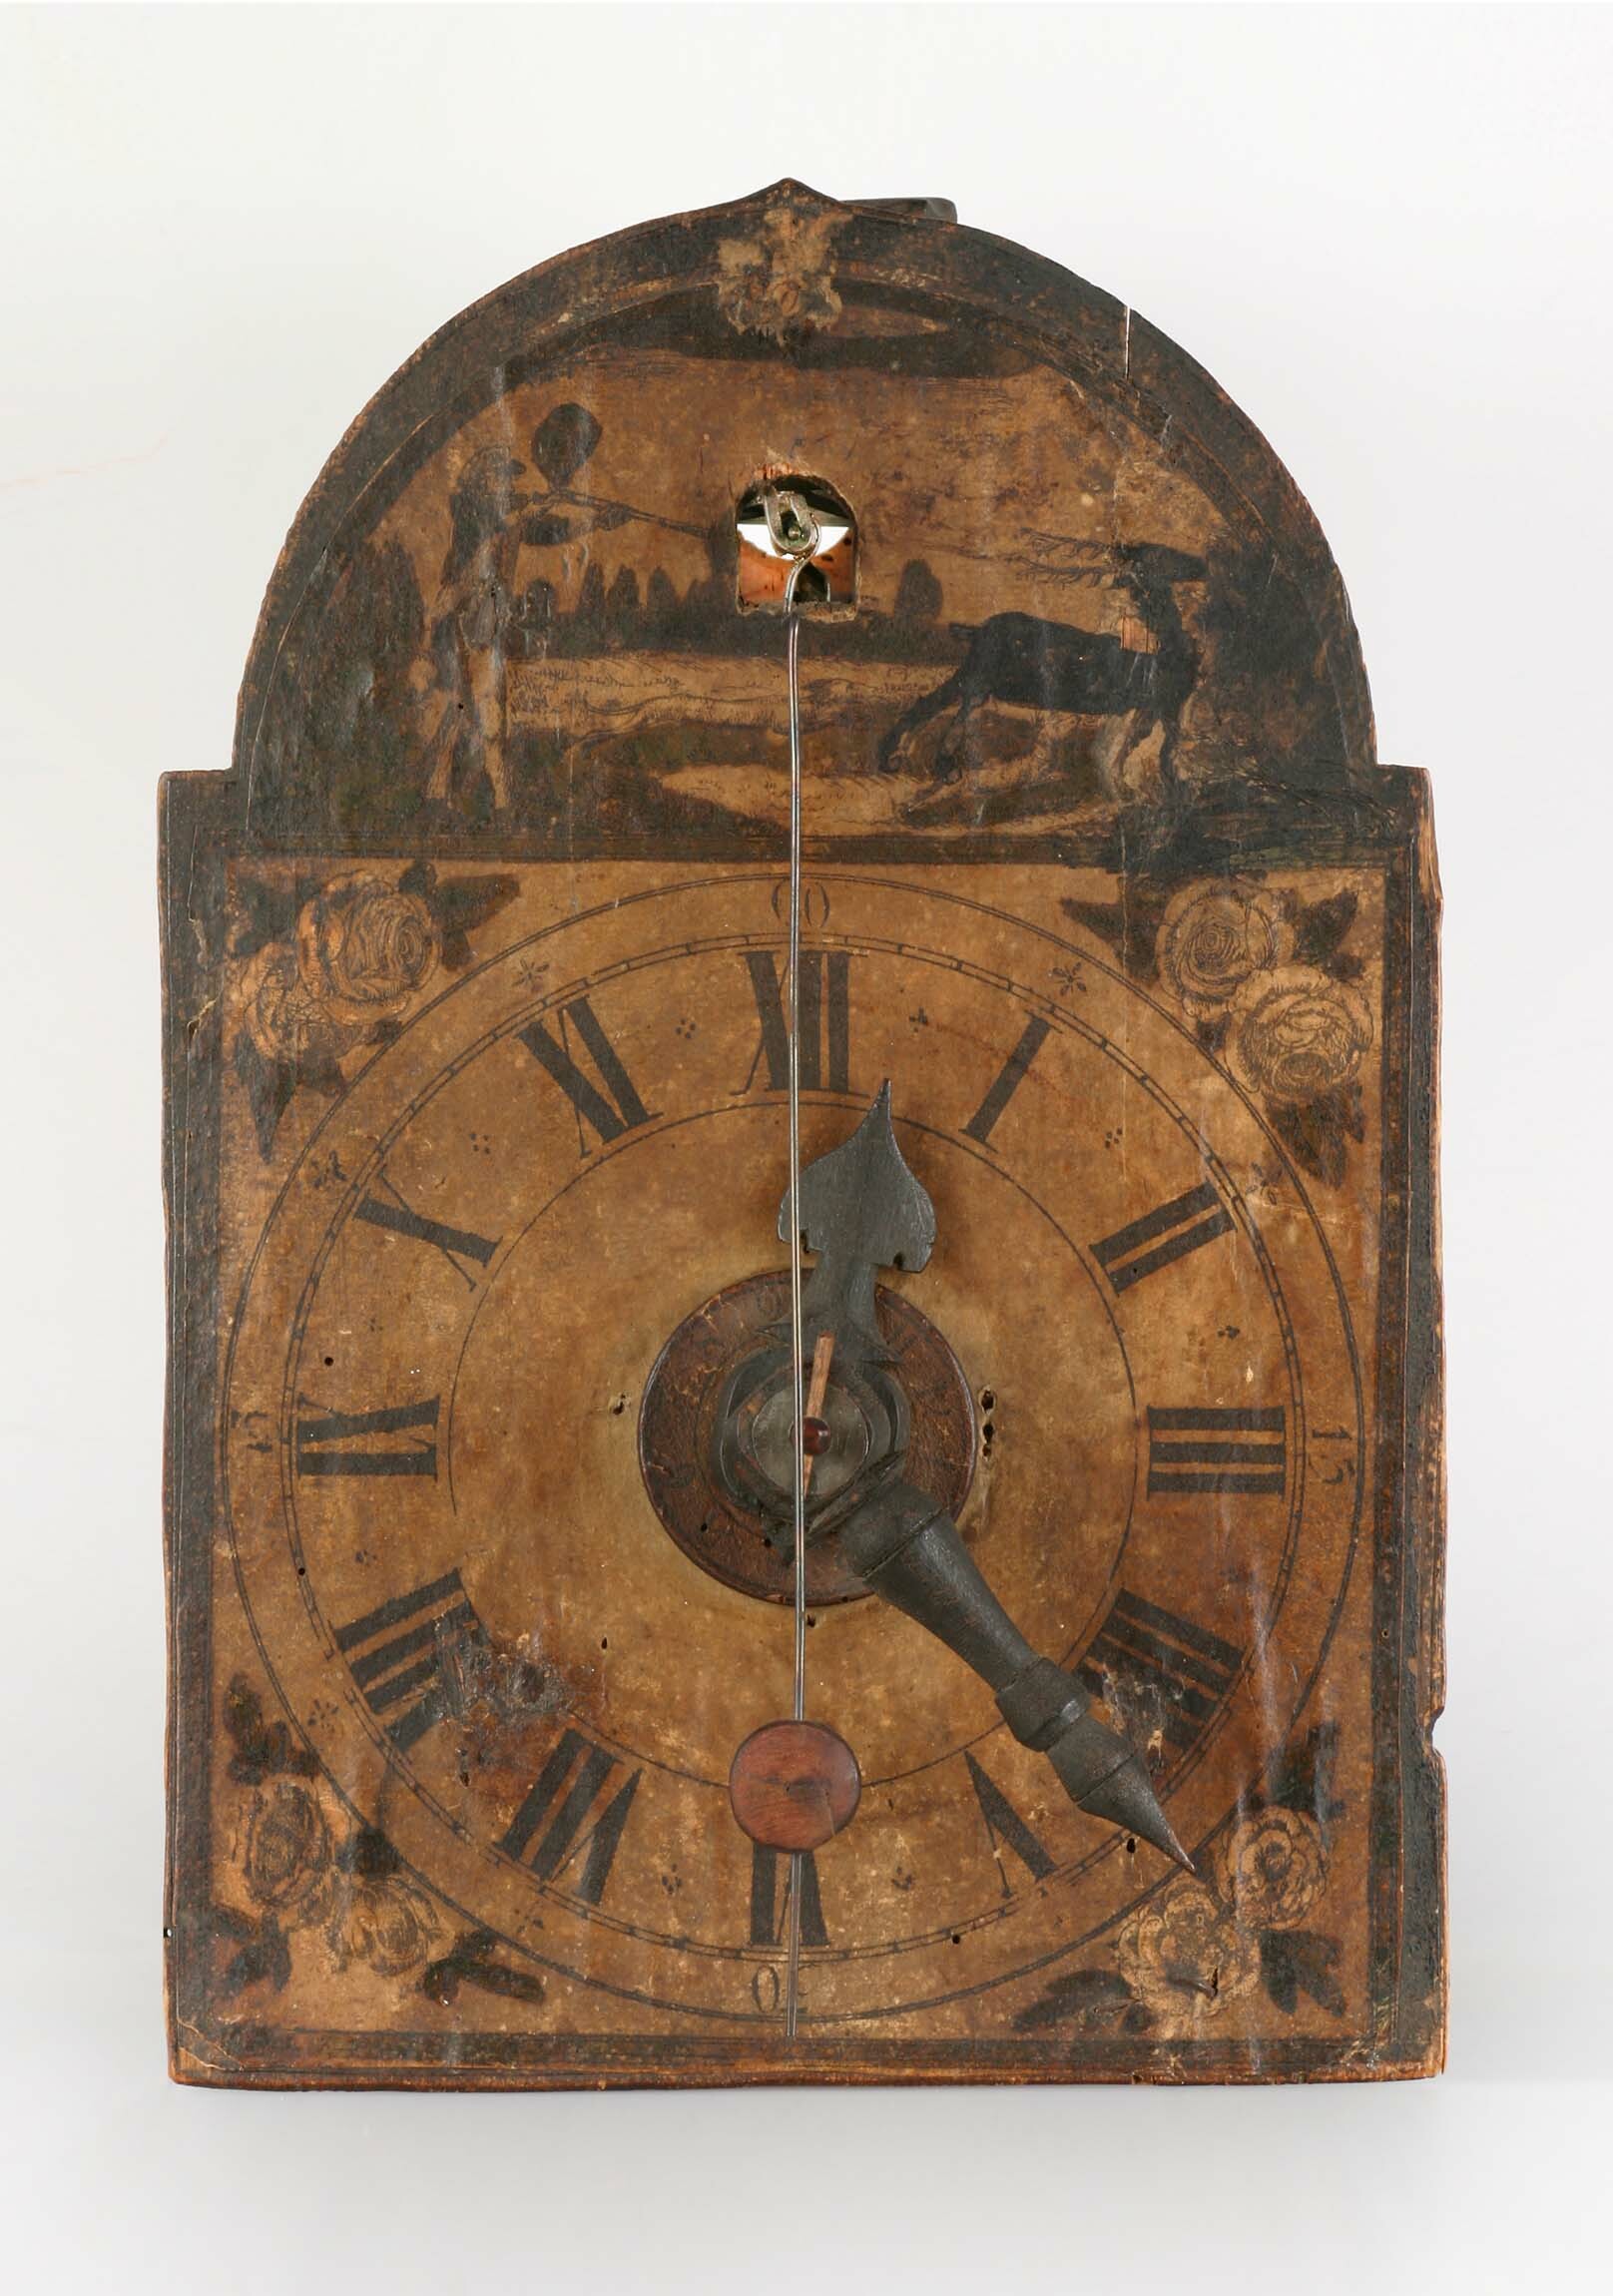 Holzräderuhr, Schwarzwald, 2. Hälfte 18. Jahrhundert (Deutsches Uhrenmuseum CC BY-SA)